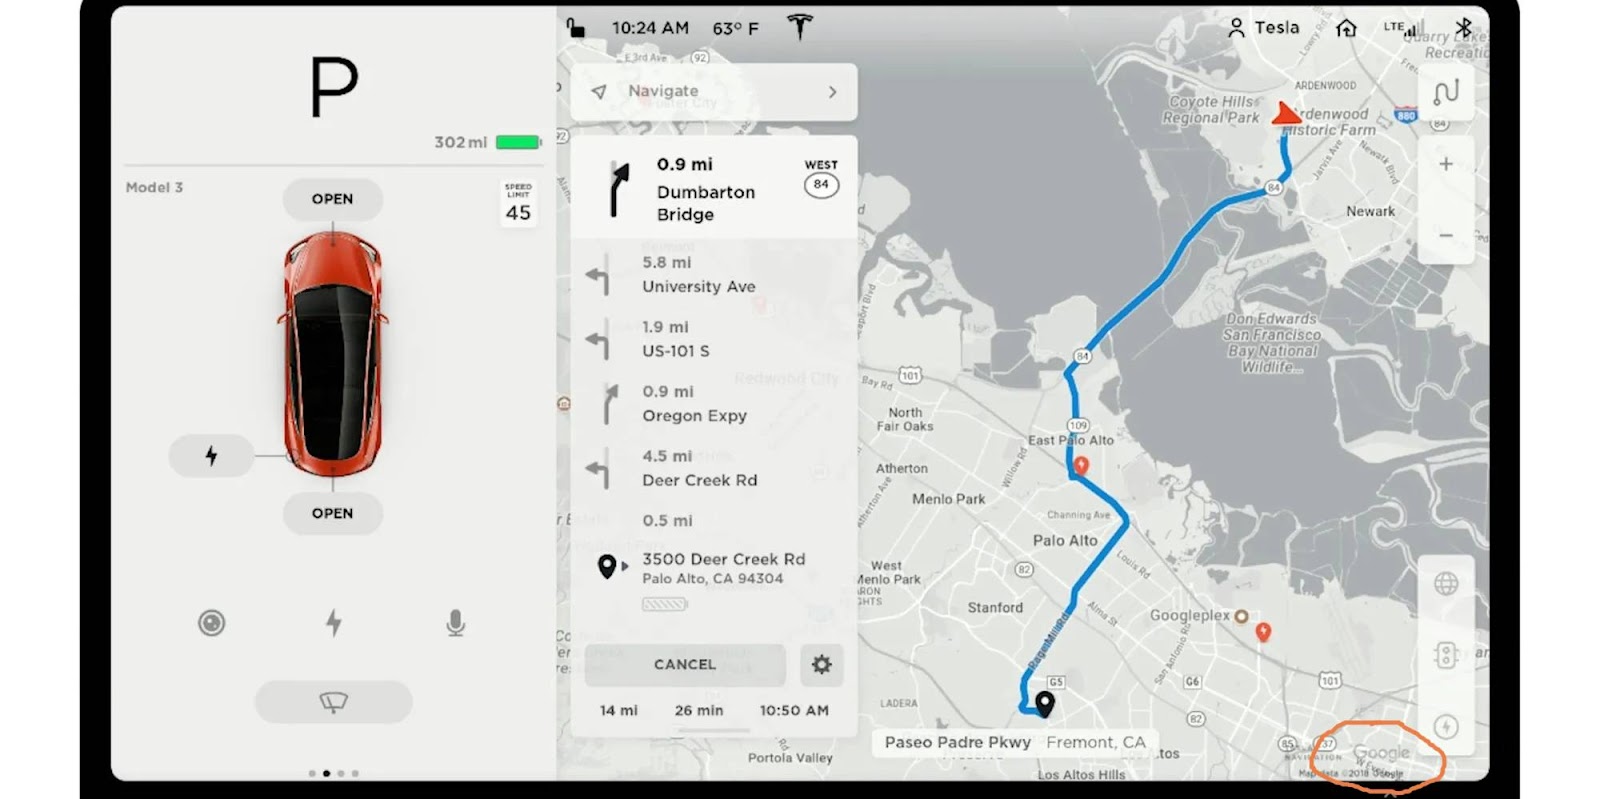 does Tesla use google maps